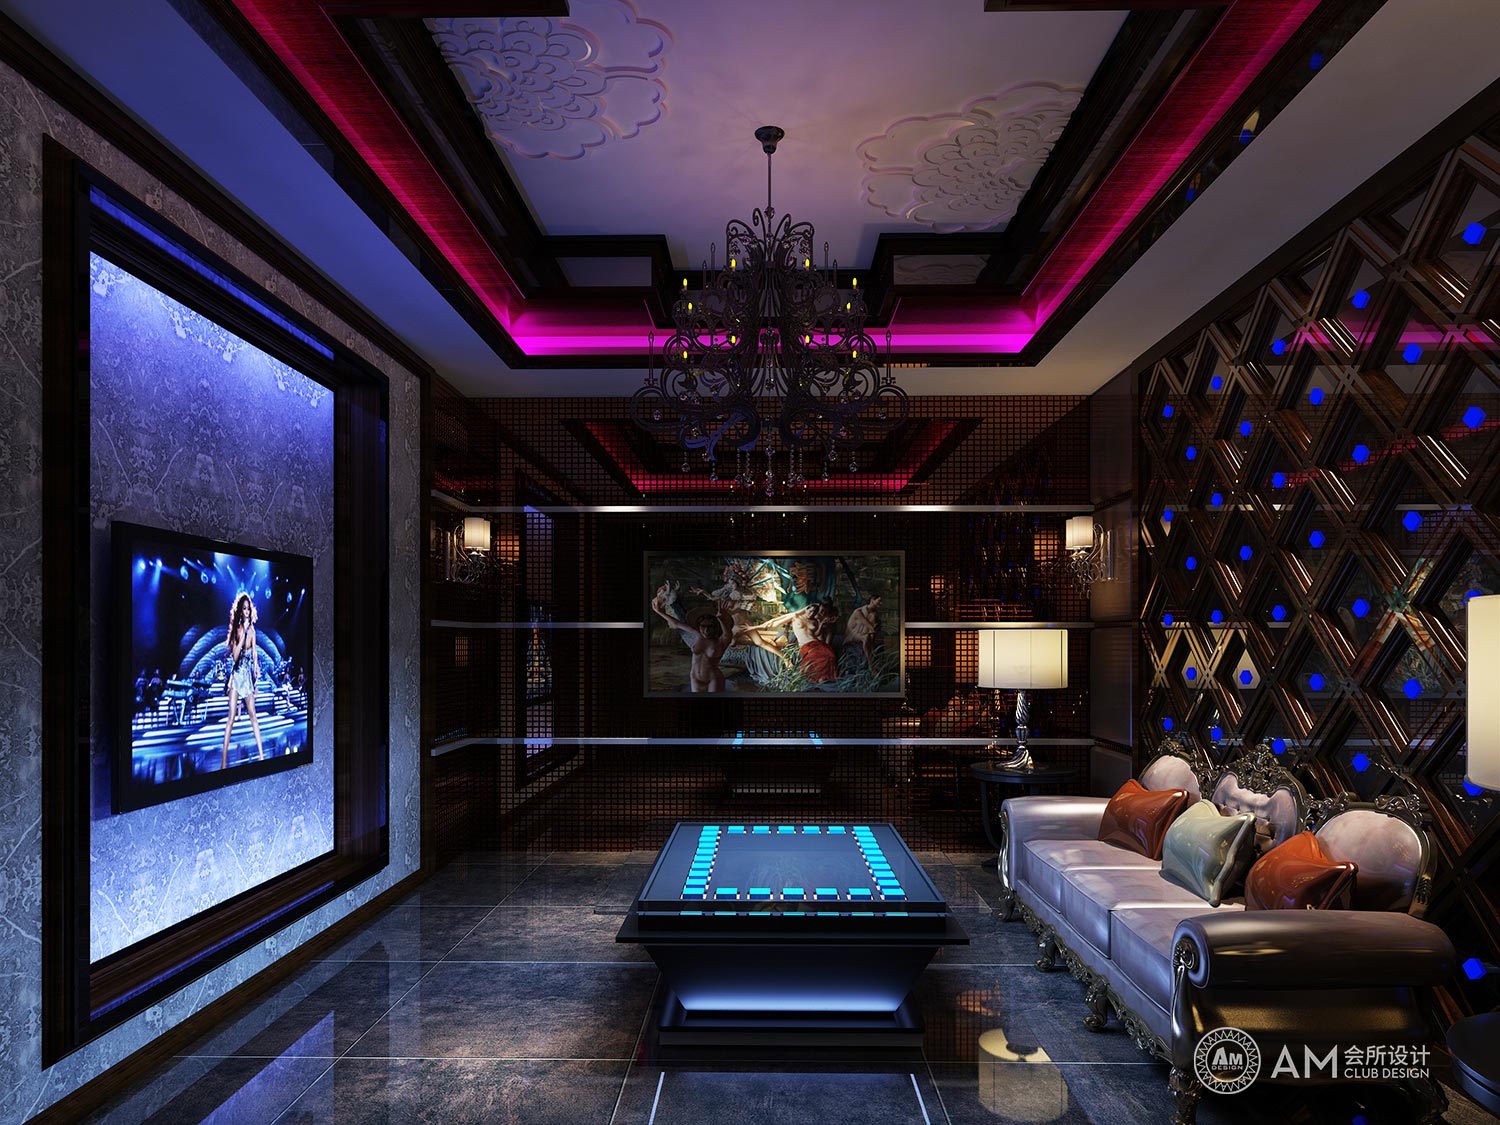 AM DESIGN | Design of KTV room of qilinhui Top Spa Club